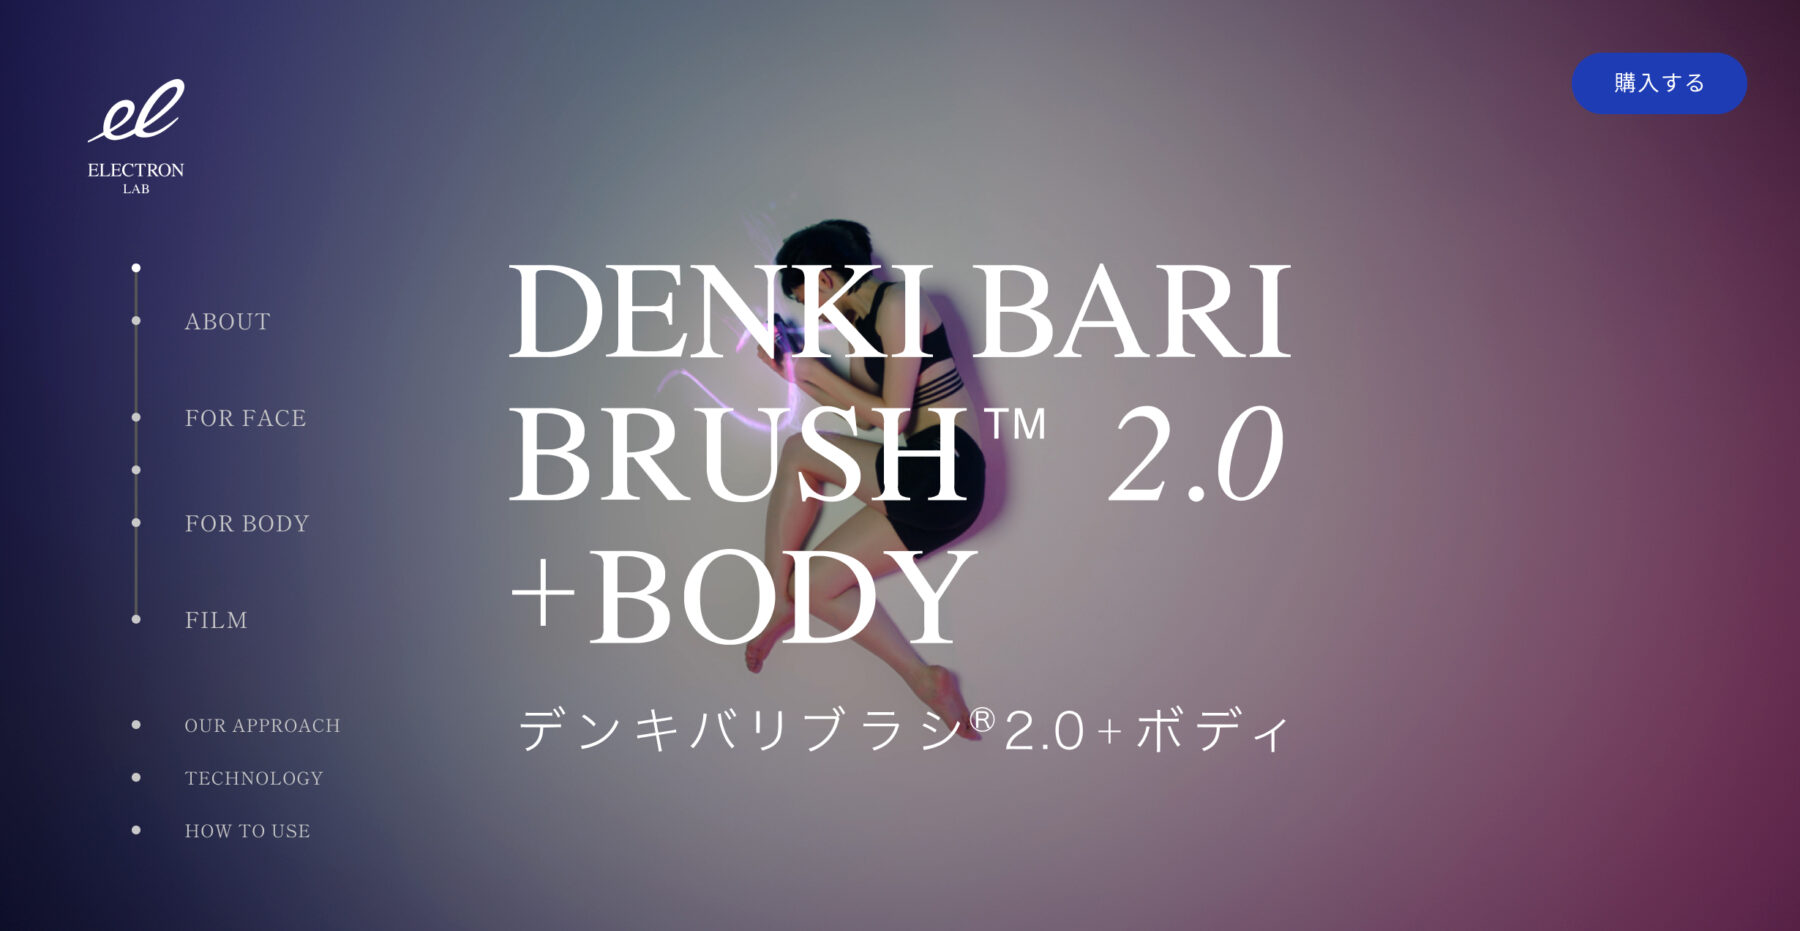 DENKI BARI BRUSH® 2.0 + BODY SPECIAL SITE - spuit.design